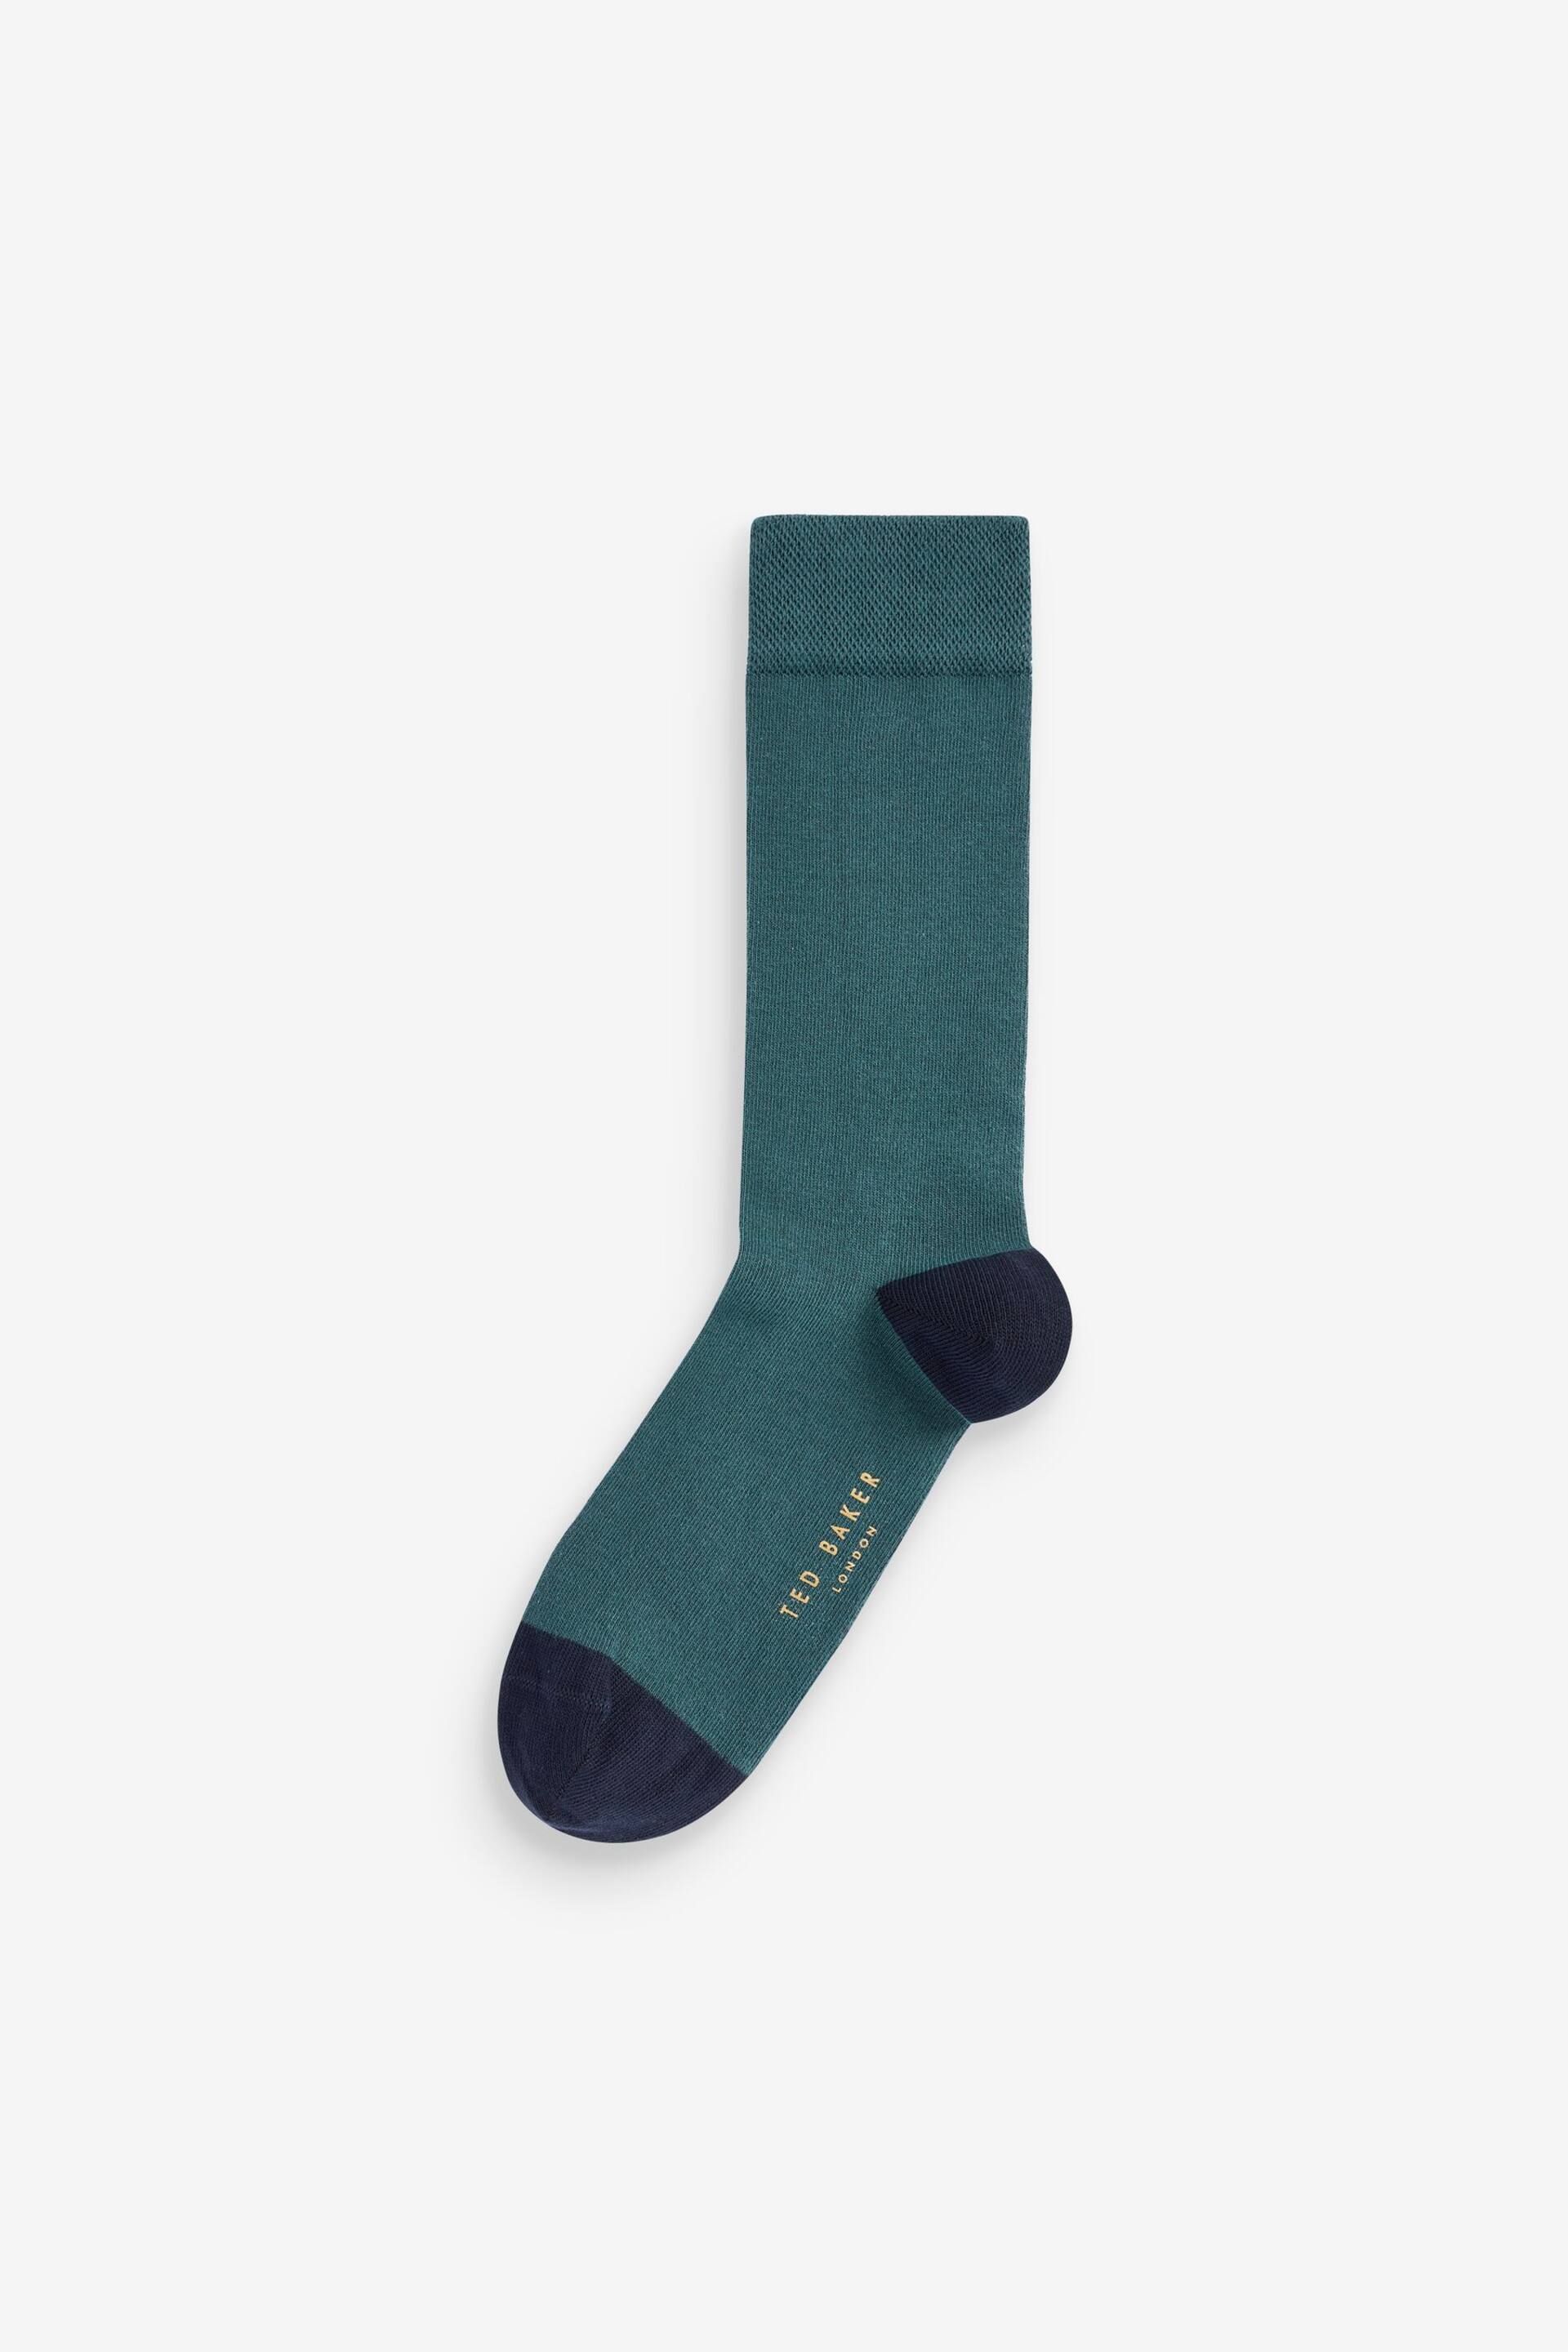 Ted Baker Green Plain Socks - Image 1 of 1